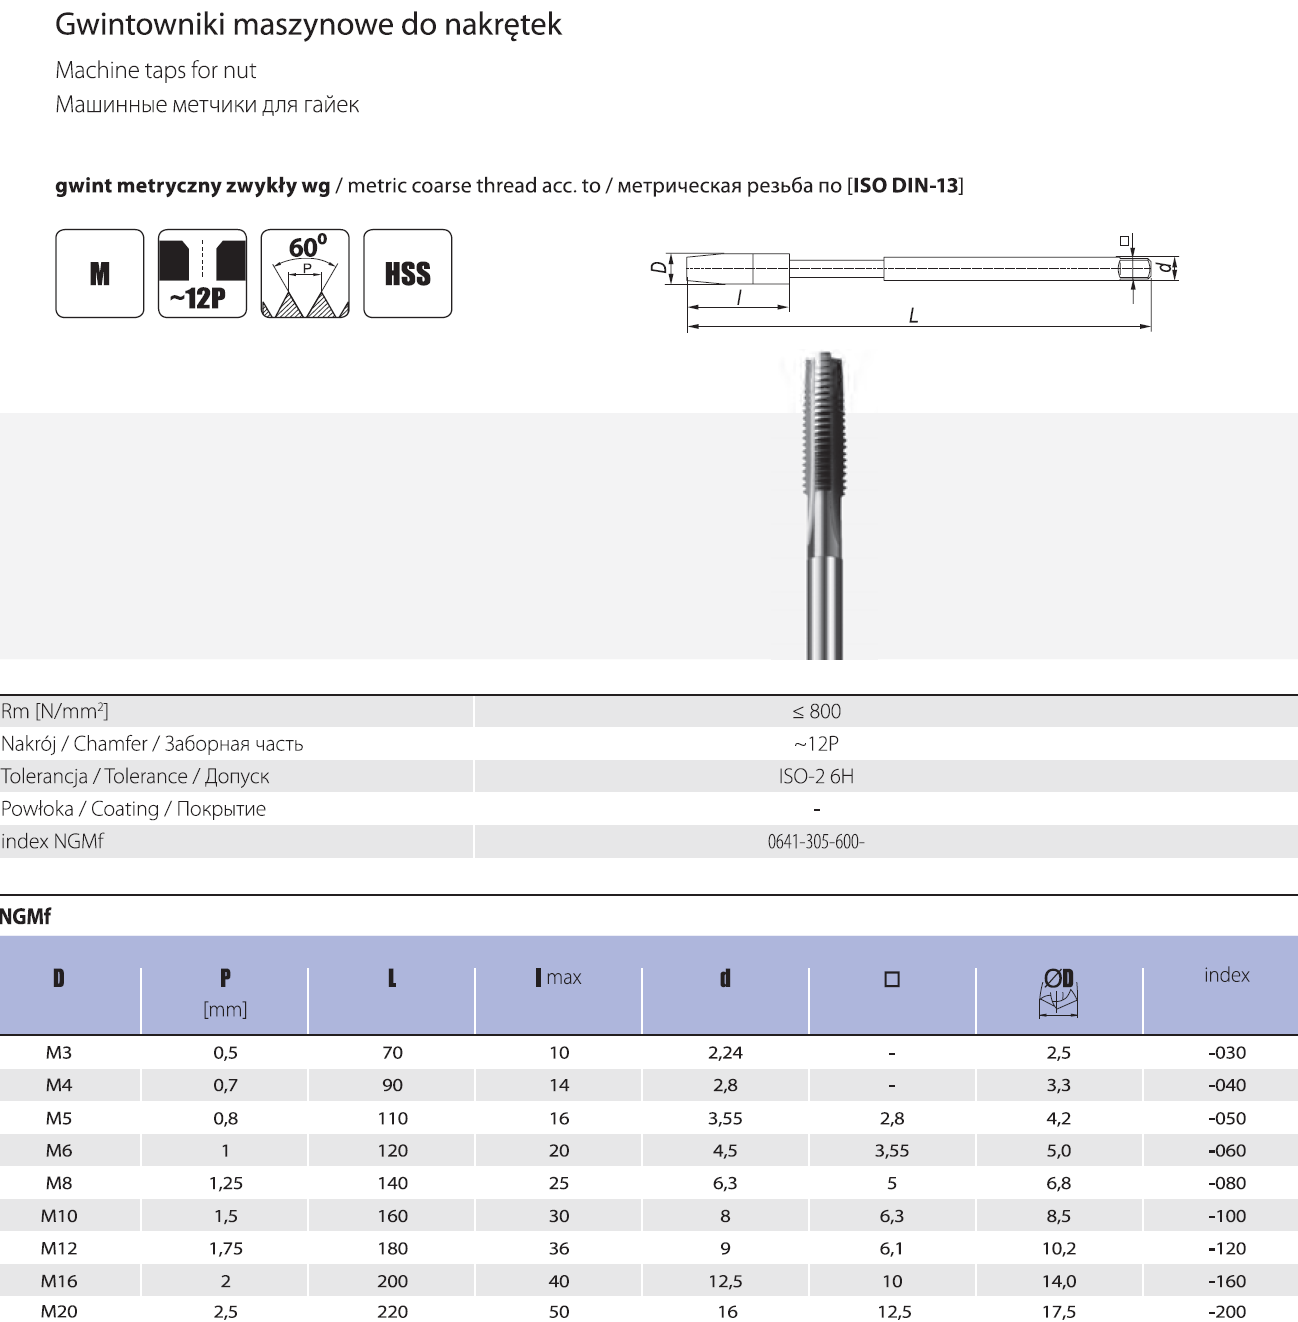 Таблицы диаметров свёрел и метчиков для нарезания резьбы по металлу - как подобрать резьбовые размеры, какой метод подбора правильный - www.rocta.ru